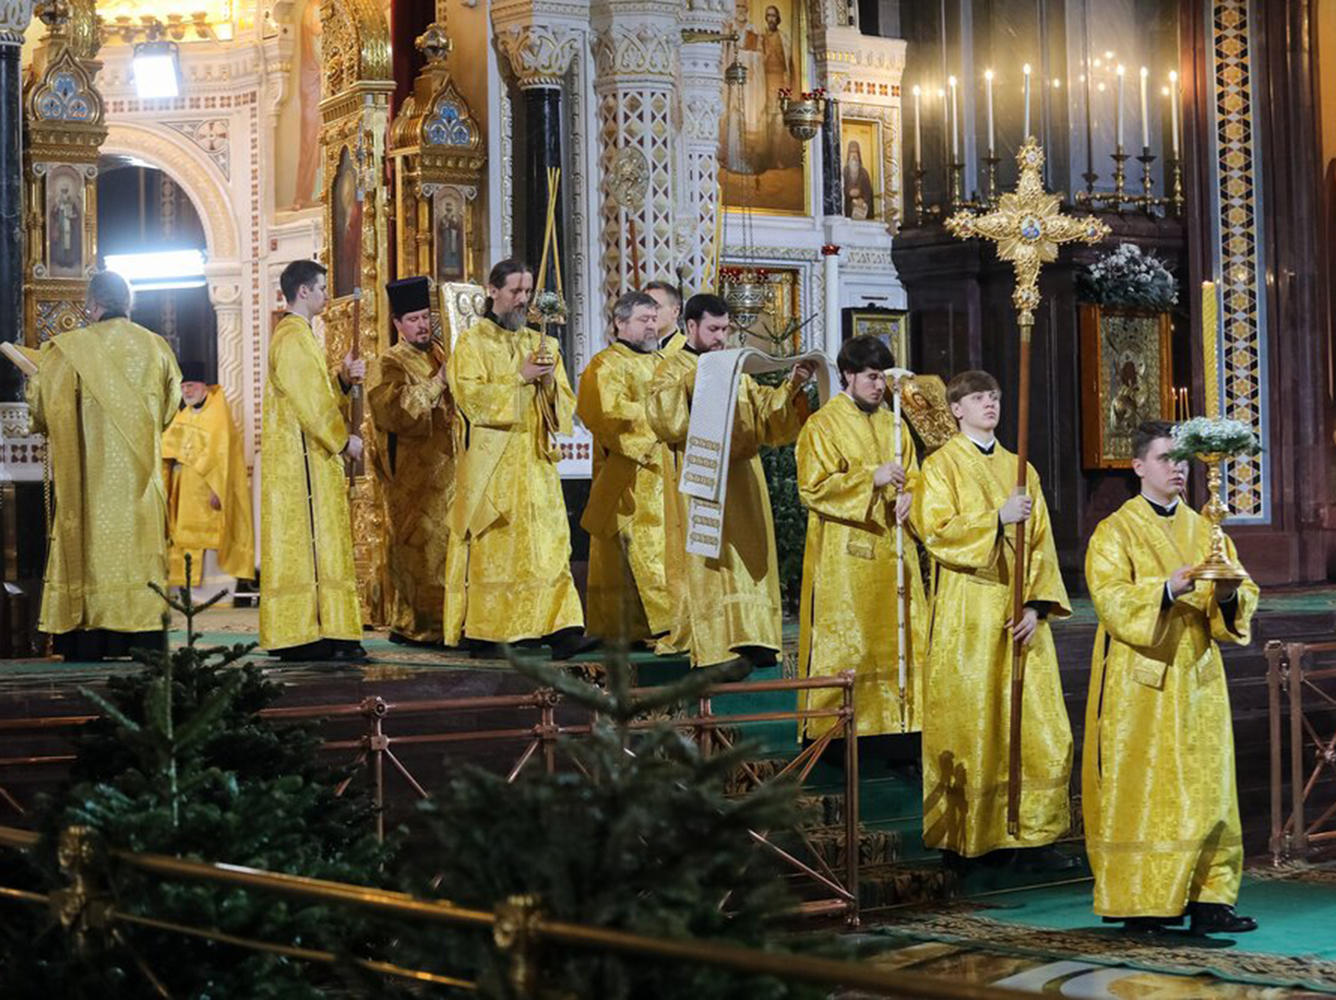 Храм христа спасителя в москве метро